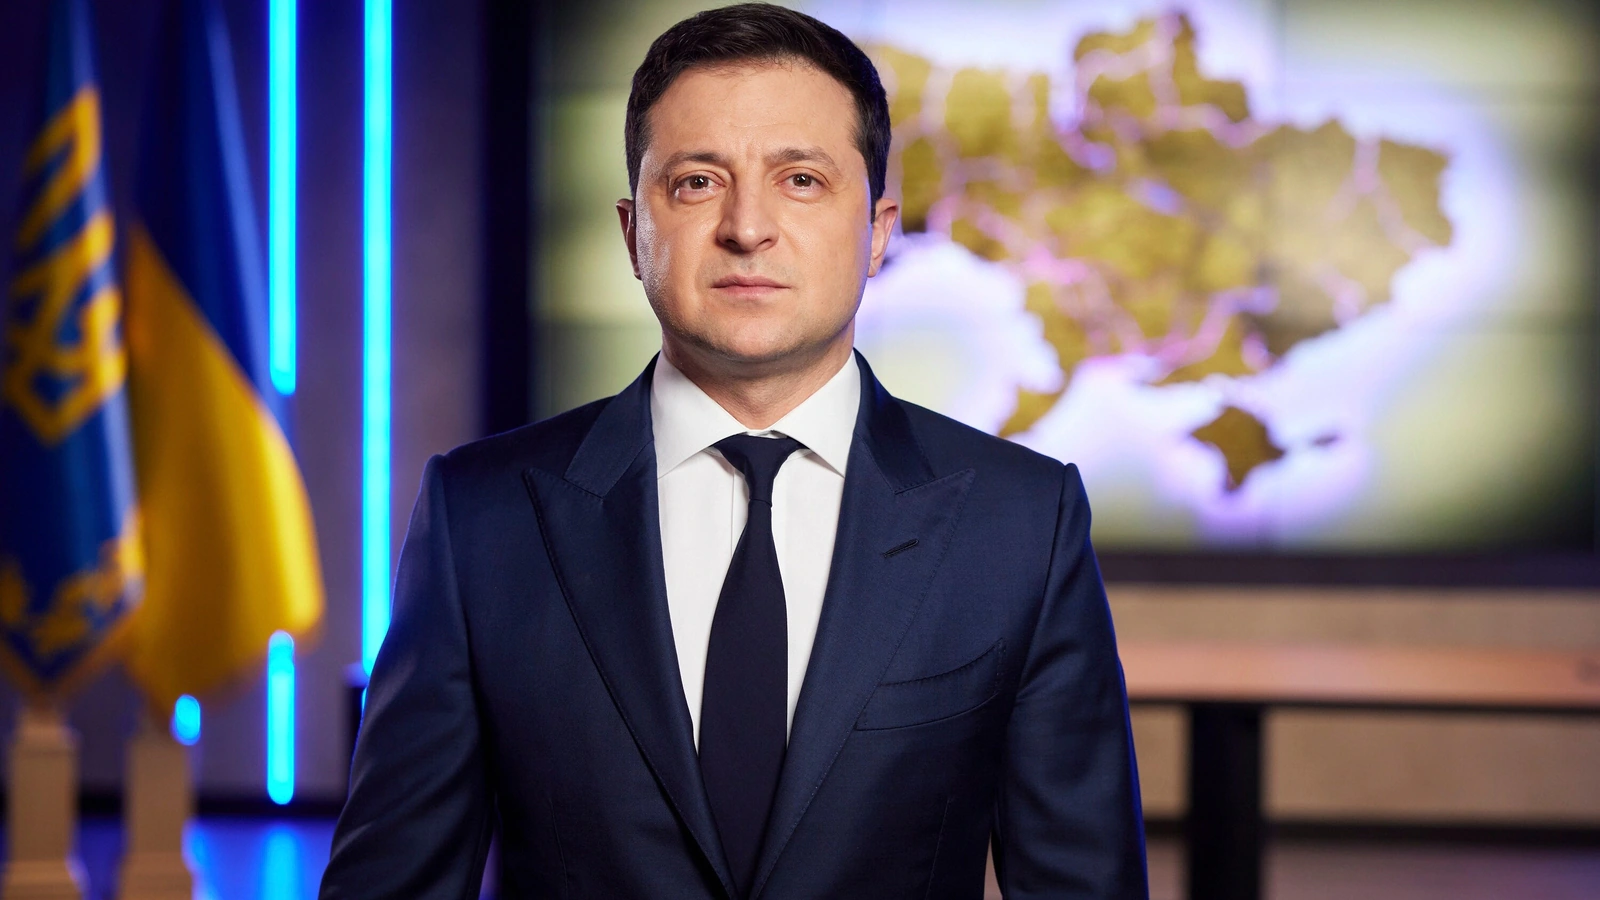 Ukrainians blame Zelensky for corruption